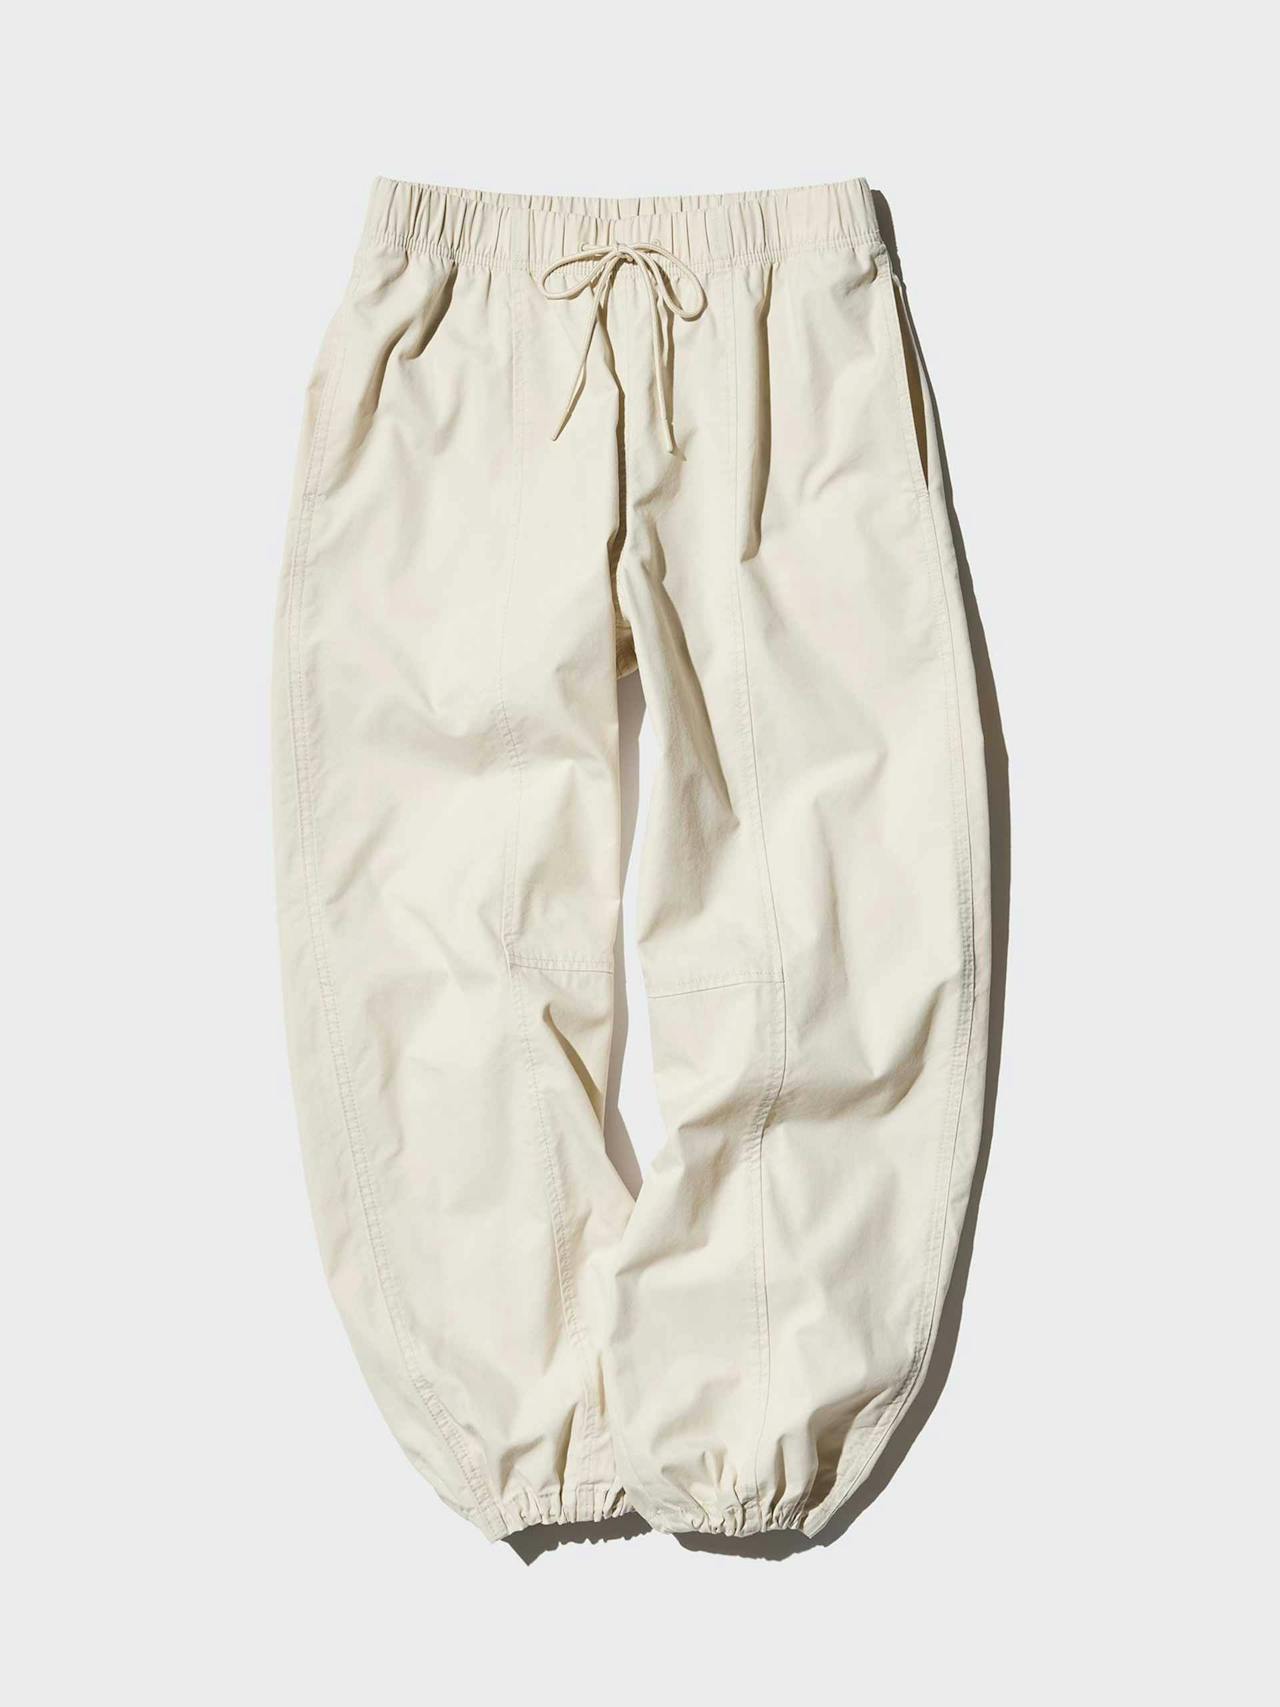 Parachute trousers (short)